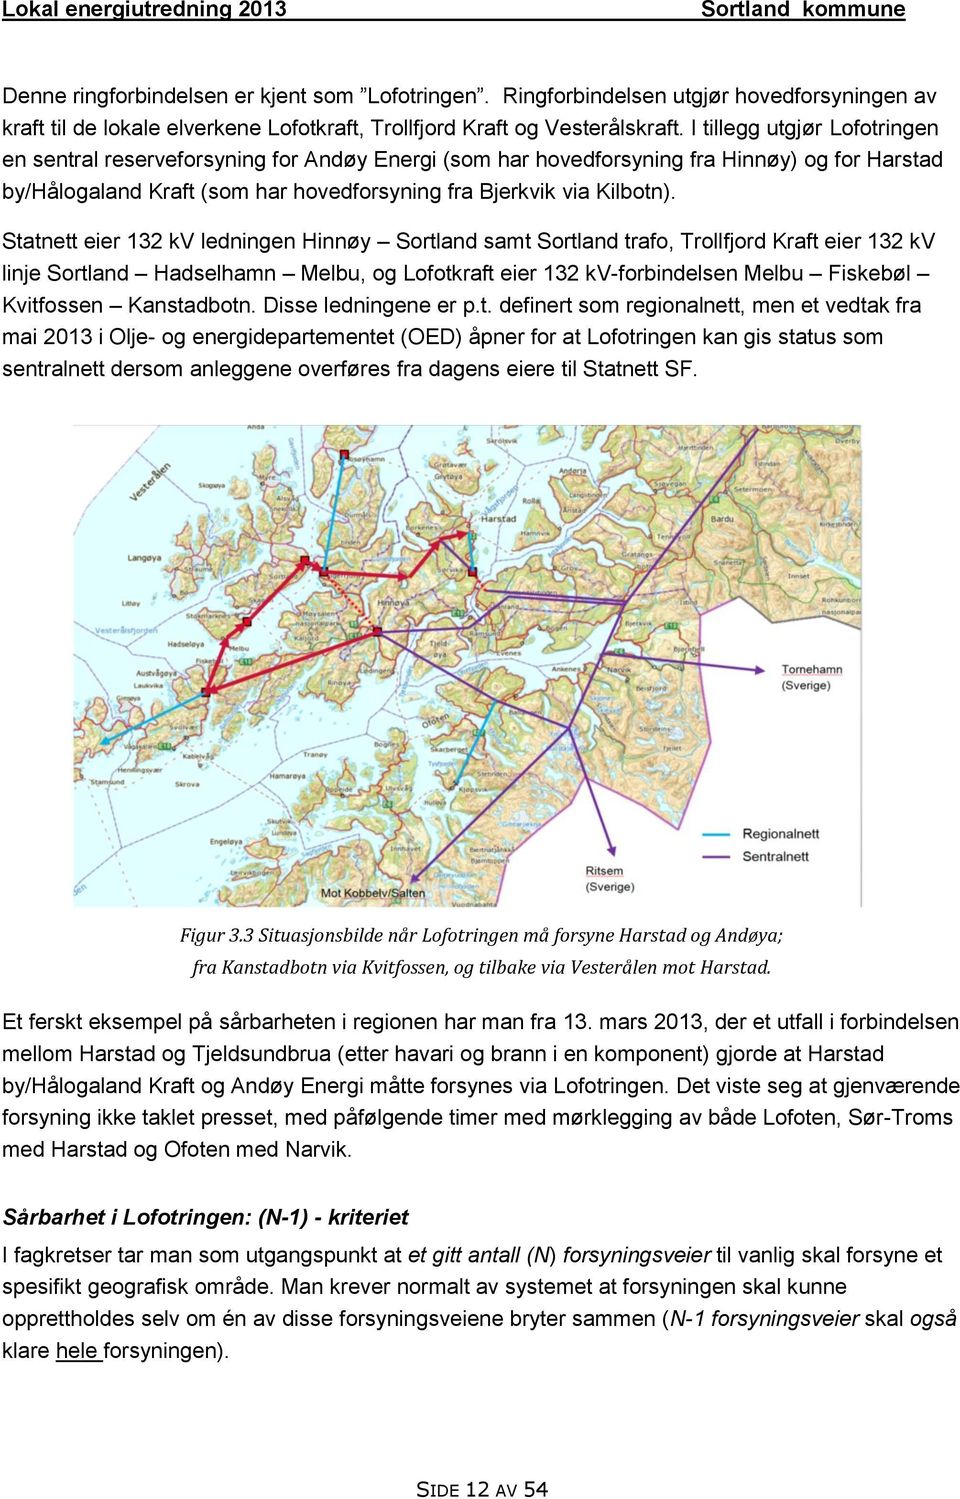 Statnett eier 132 kv ledningen Hinnøy Sortland samt Sortland trafo, Trollfjord Kraft eier 132 kv linje Sortland Hadselhamn Melbu, og Lofotkraft eier 132 kv-forbindelsen Melbu Fiskebøl Kvitfossen